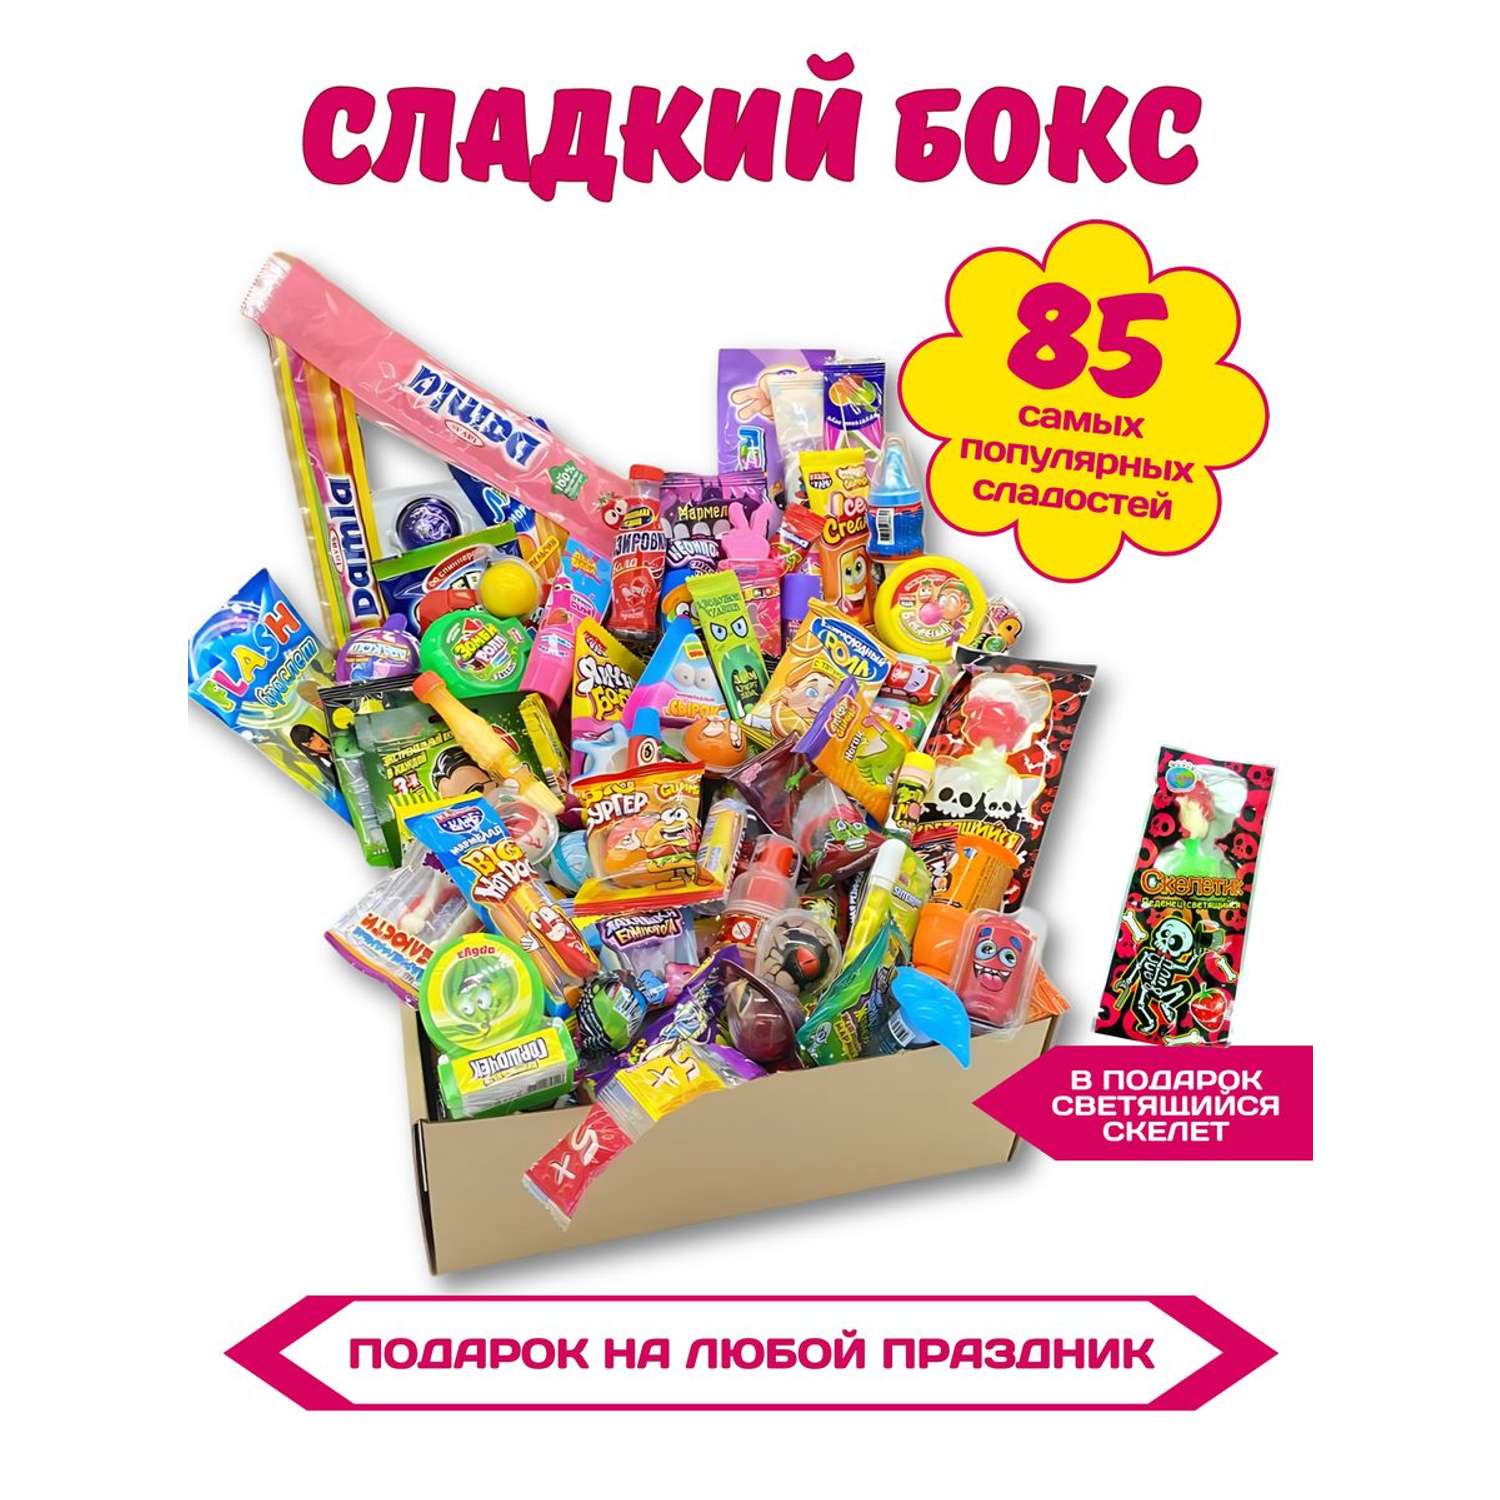 Сладкий набор VKUSNODAY подарочный 85 конфет - фото 1